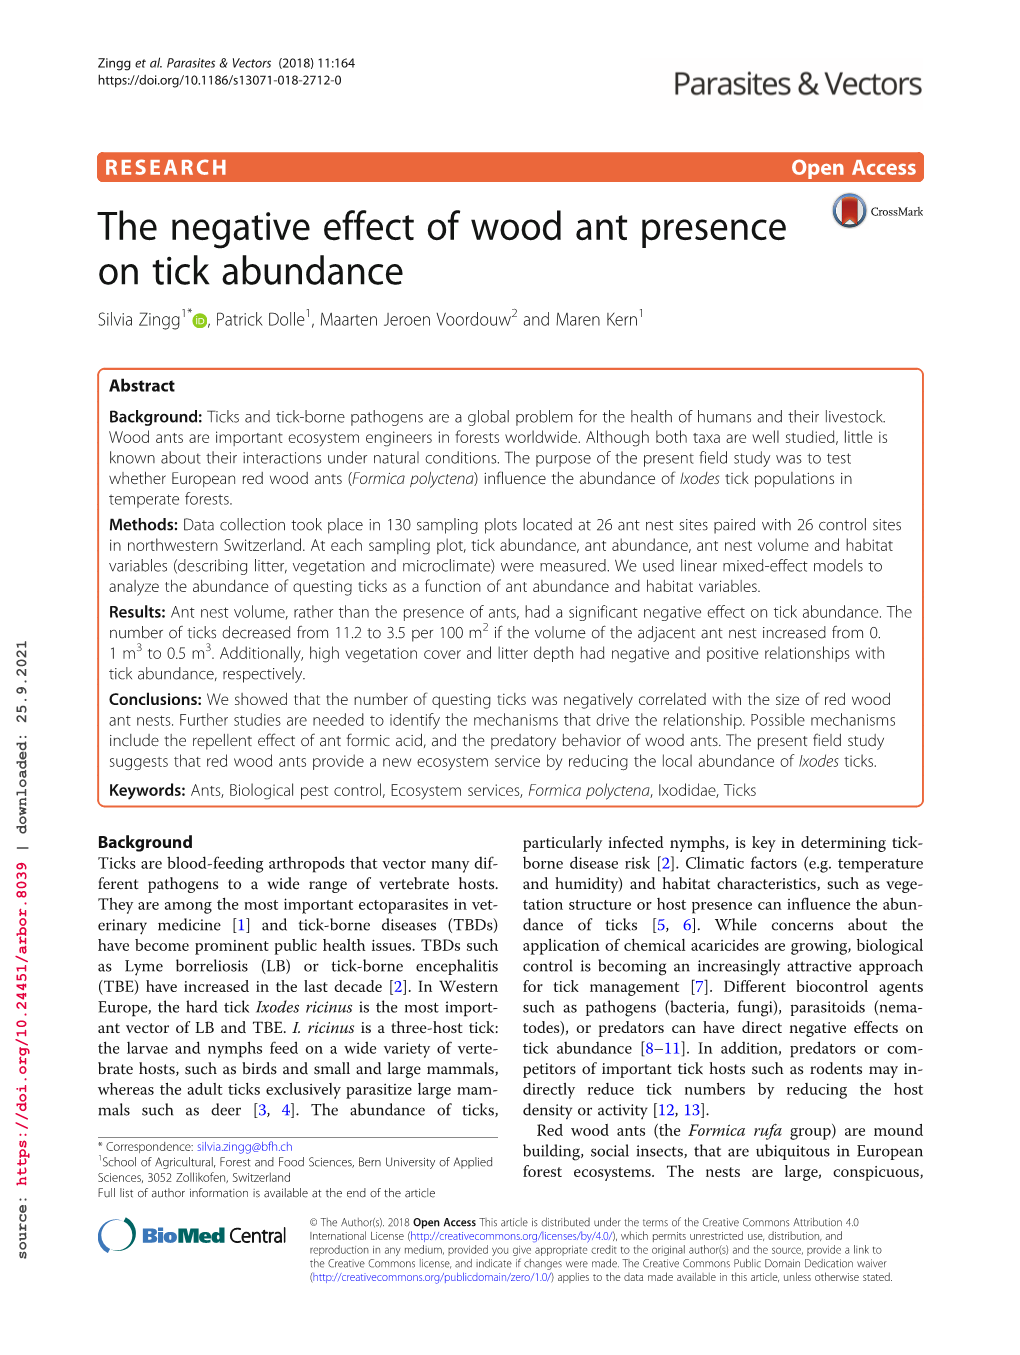 The Negative Effect of Wood Ant Presence on Tick Abundance Silvia Zingg1* , Patrick Dolle1, Maarten Jeroen Voordouw2 and Maren Kern1